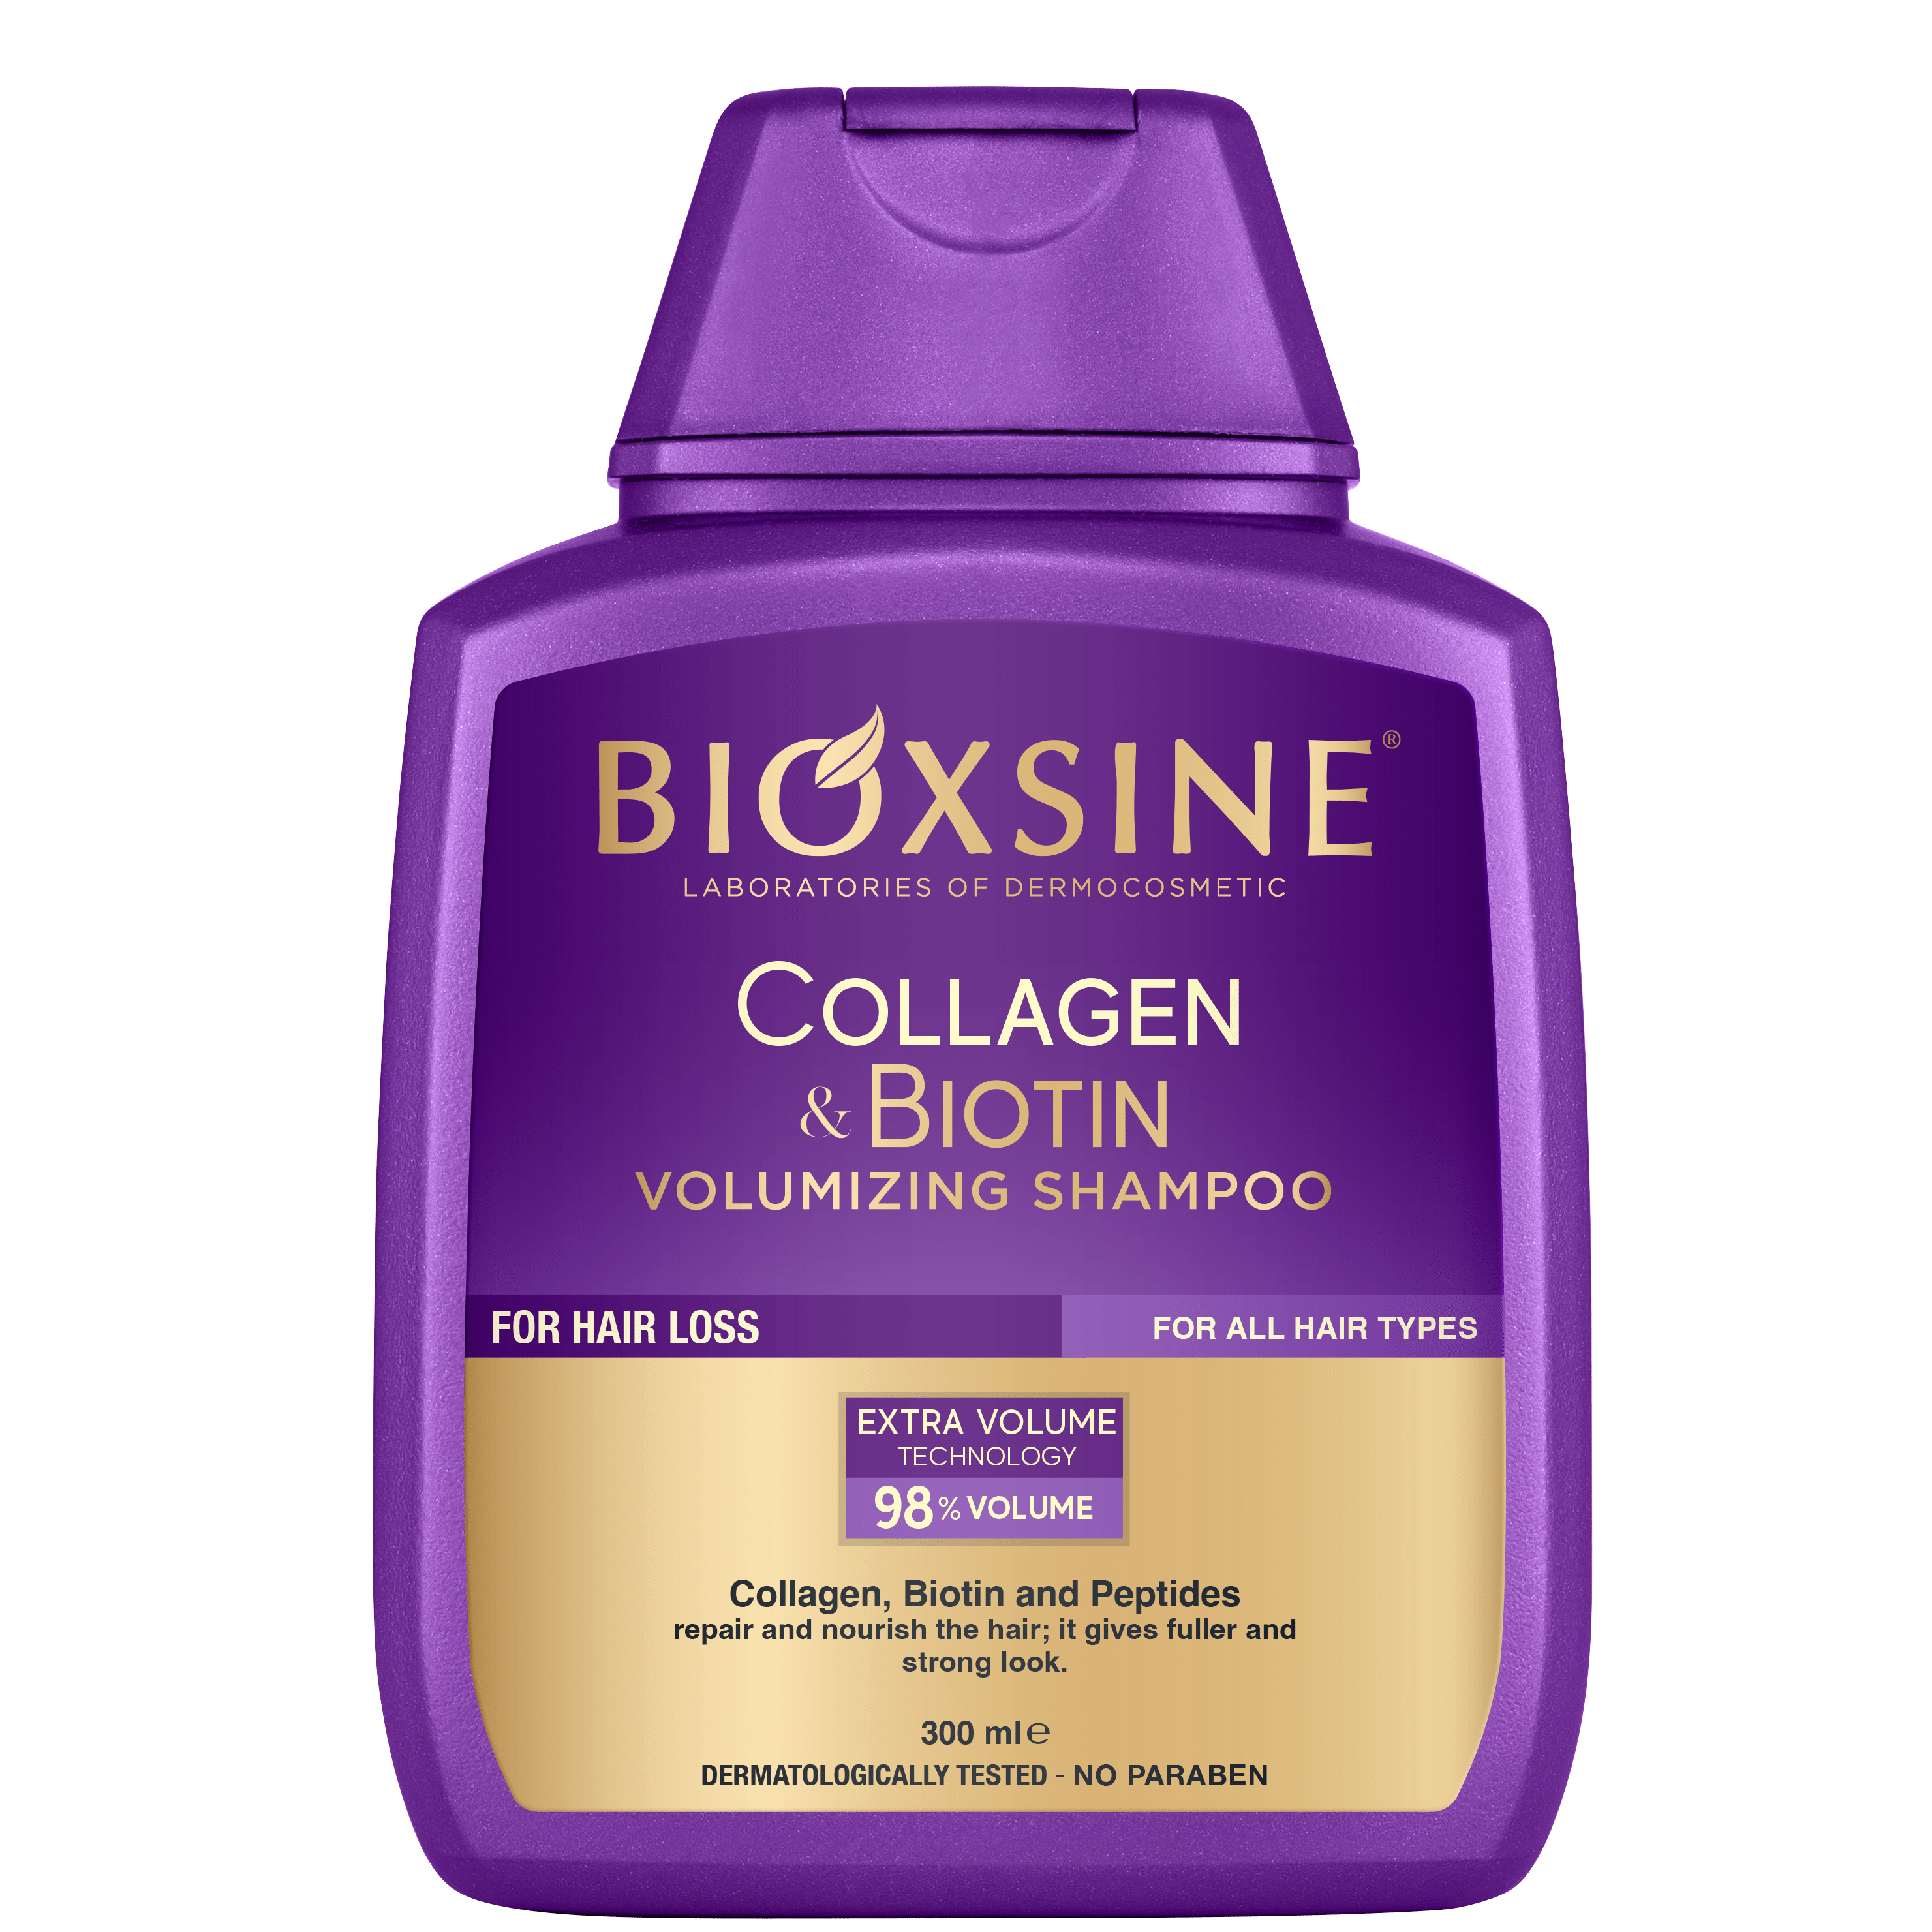 biotin collagen szampon